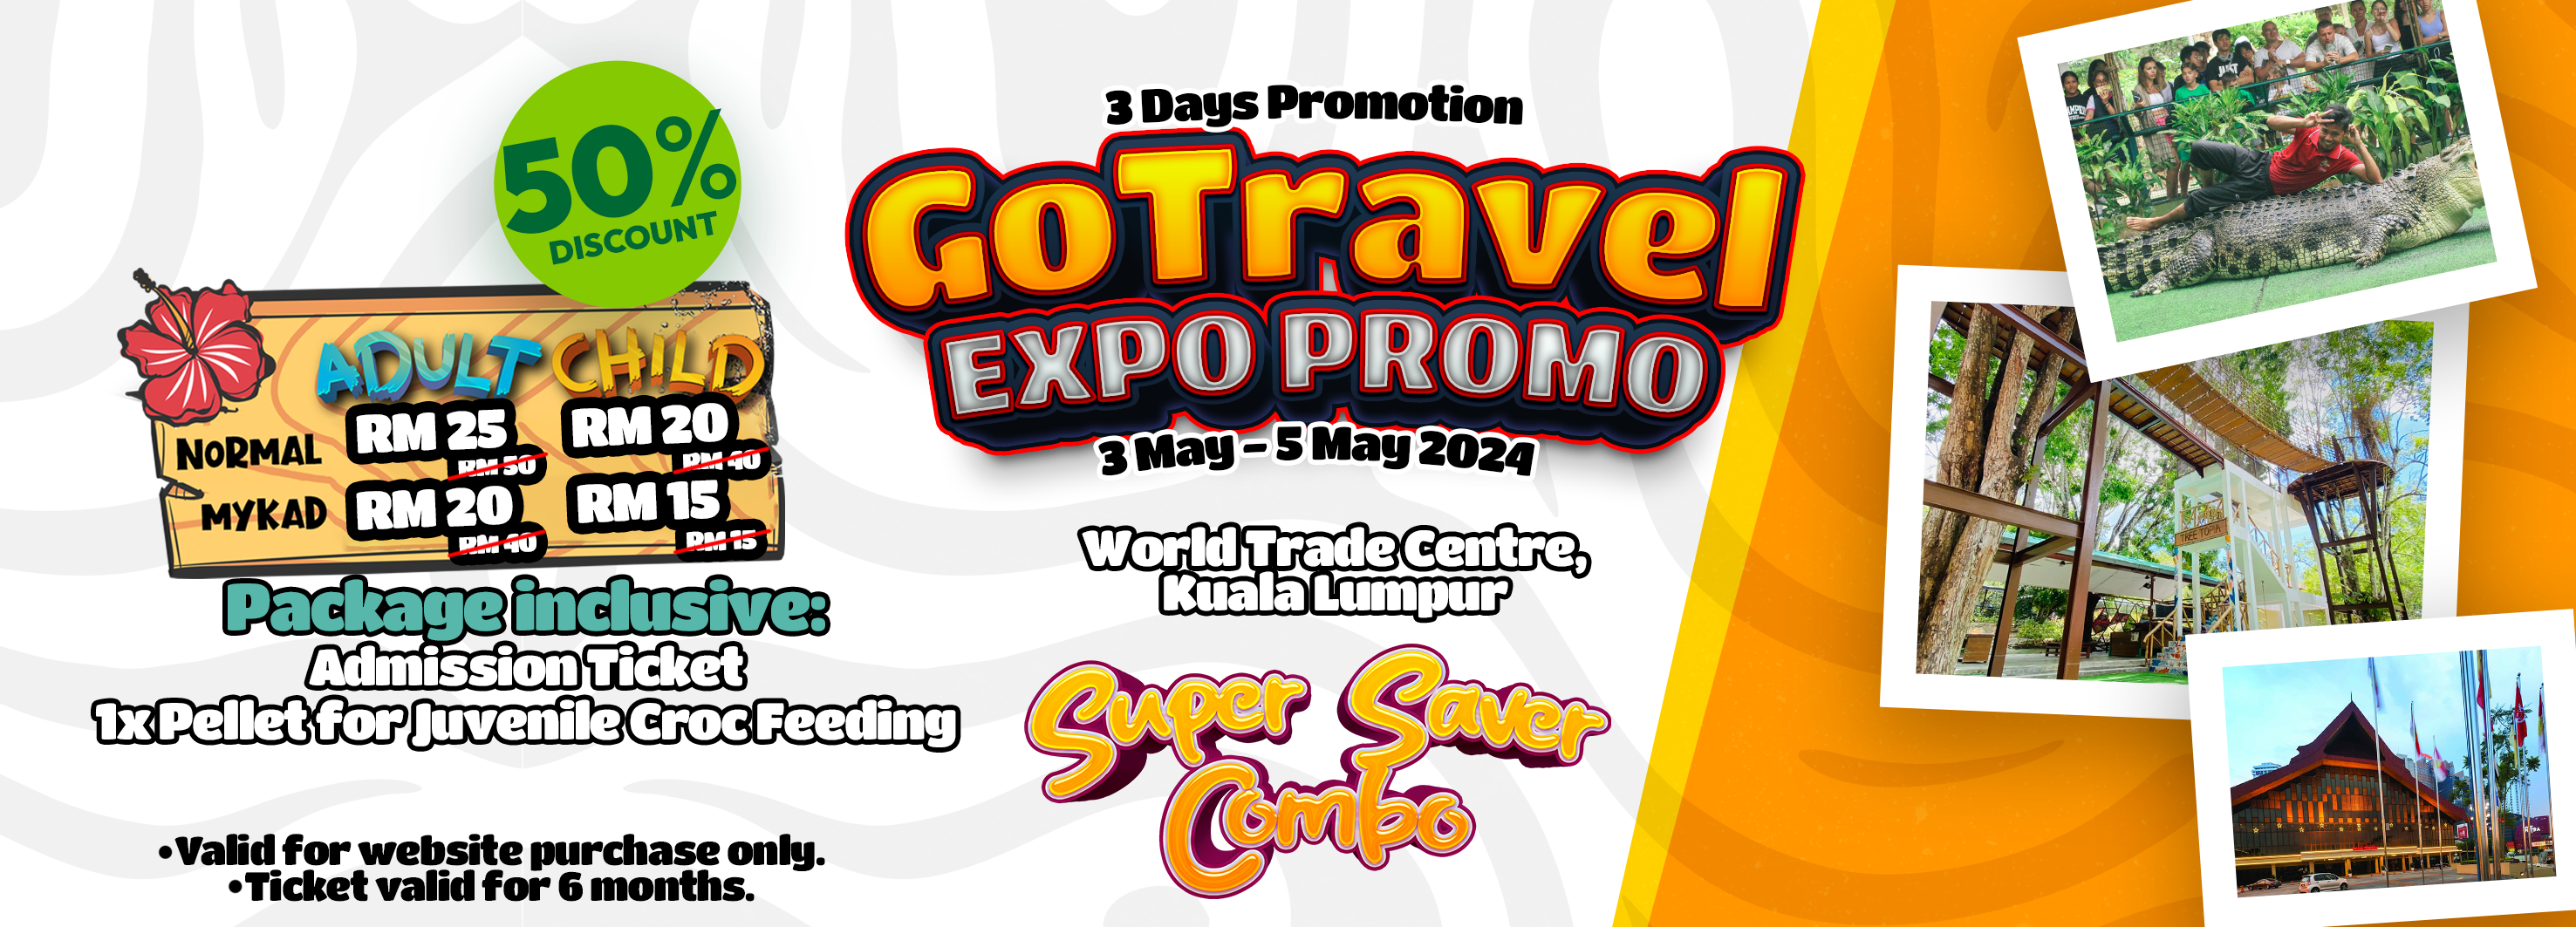 GoTravel Expo Promo